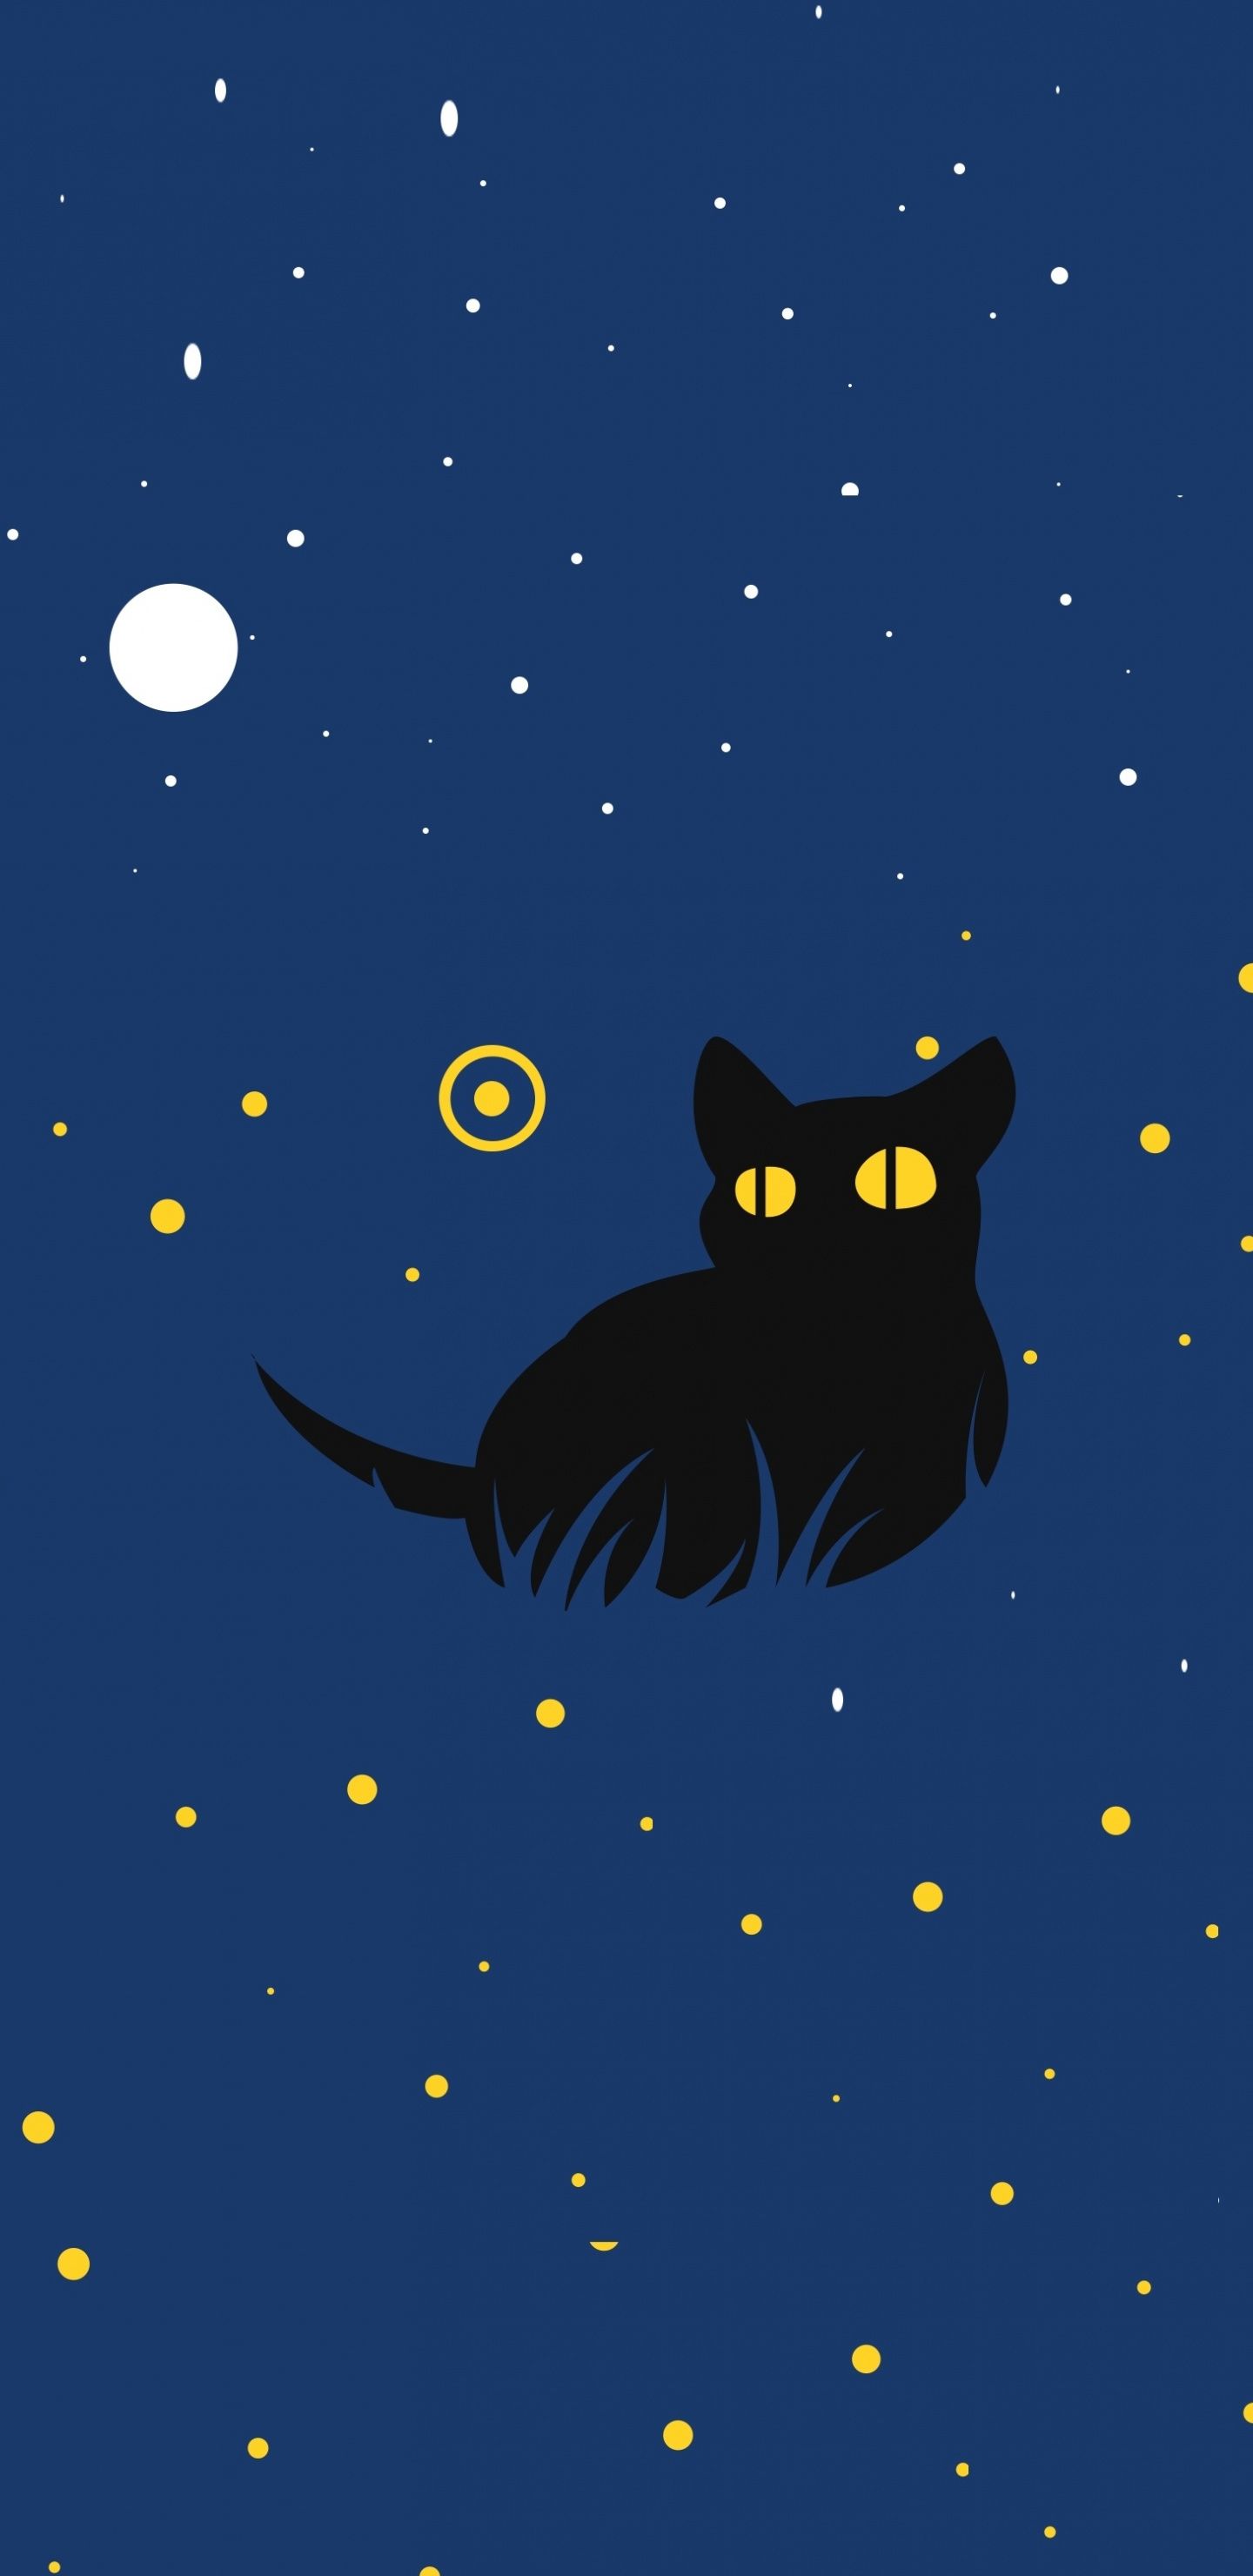 Black Cat: Mèo đen thường được liên kết với điều kỳ lạ và bí ẩn, nhưng trong thế giới động vật, chúng hoàn toàn đáng được yêu thương và quan tâm. Hãy đến xem ảnh về mèo đen, những hình ảnh đặc biệt và đẹp, để khám phá những con mèo đen dễ thương của chúng ta.